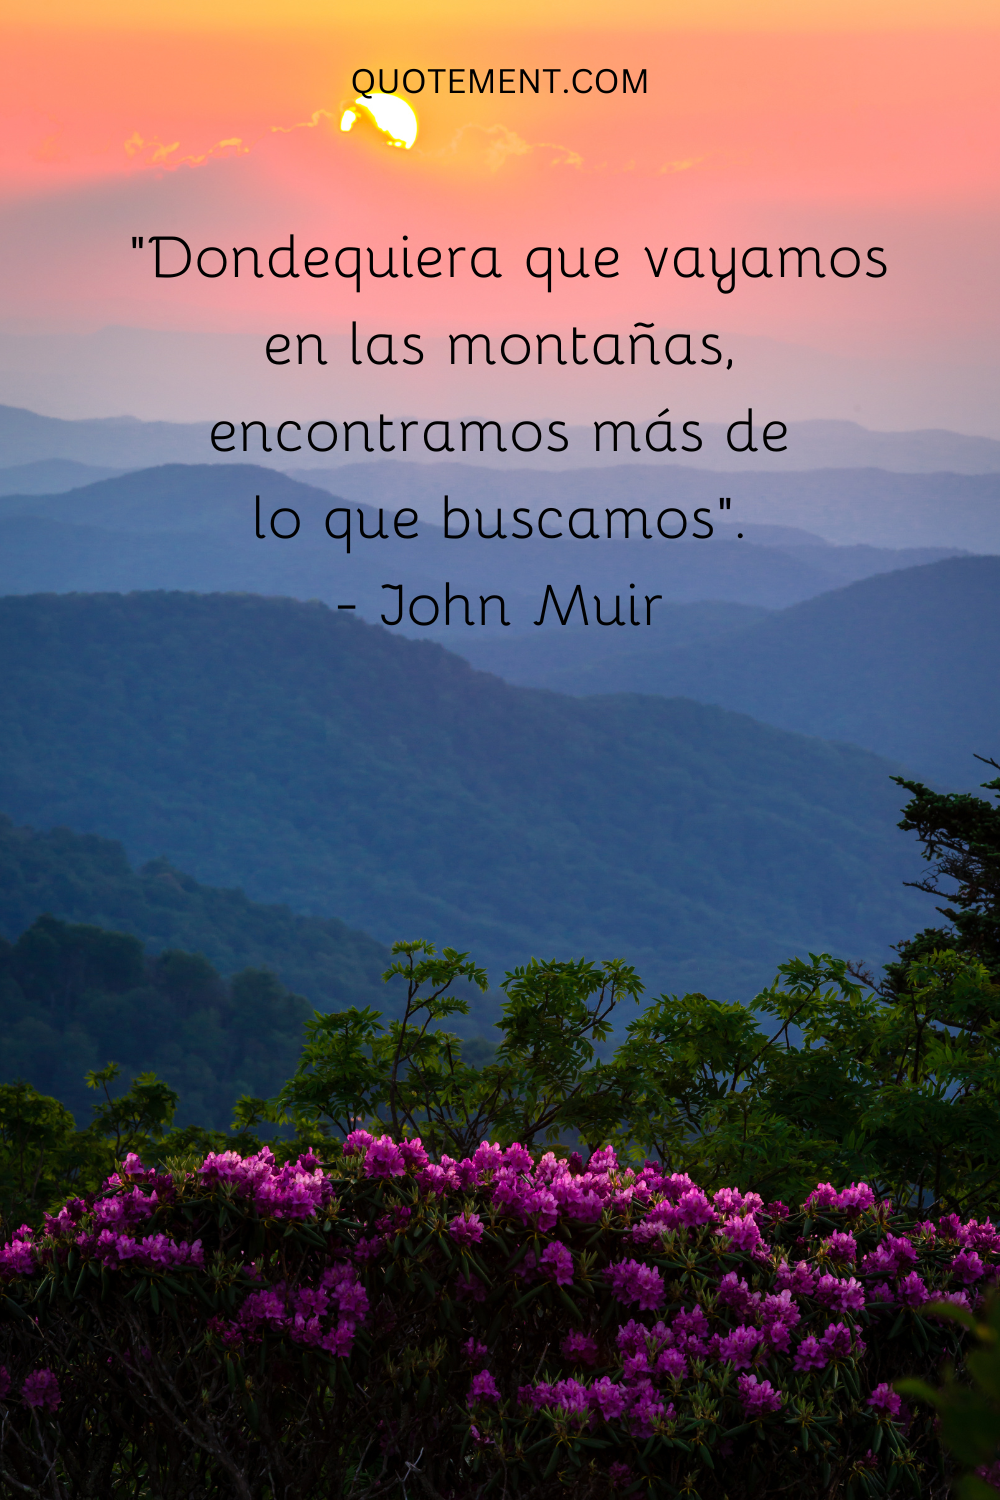 "Dondequiera que vayamos en las montañas, encontramos más de lo que buscamos". - John Muir